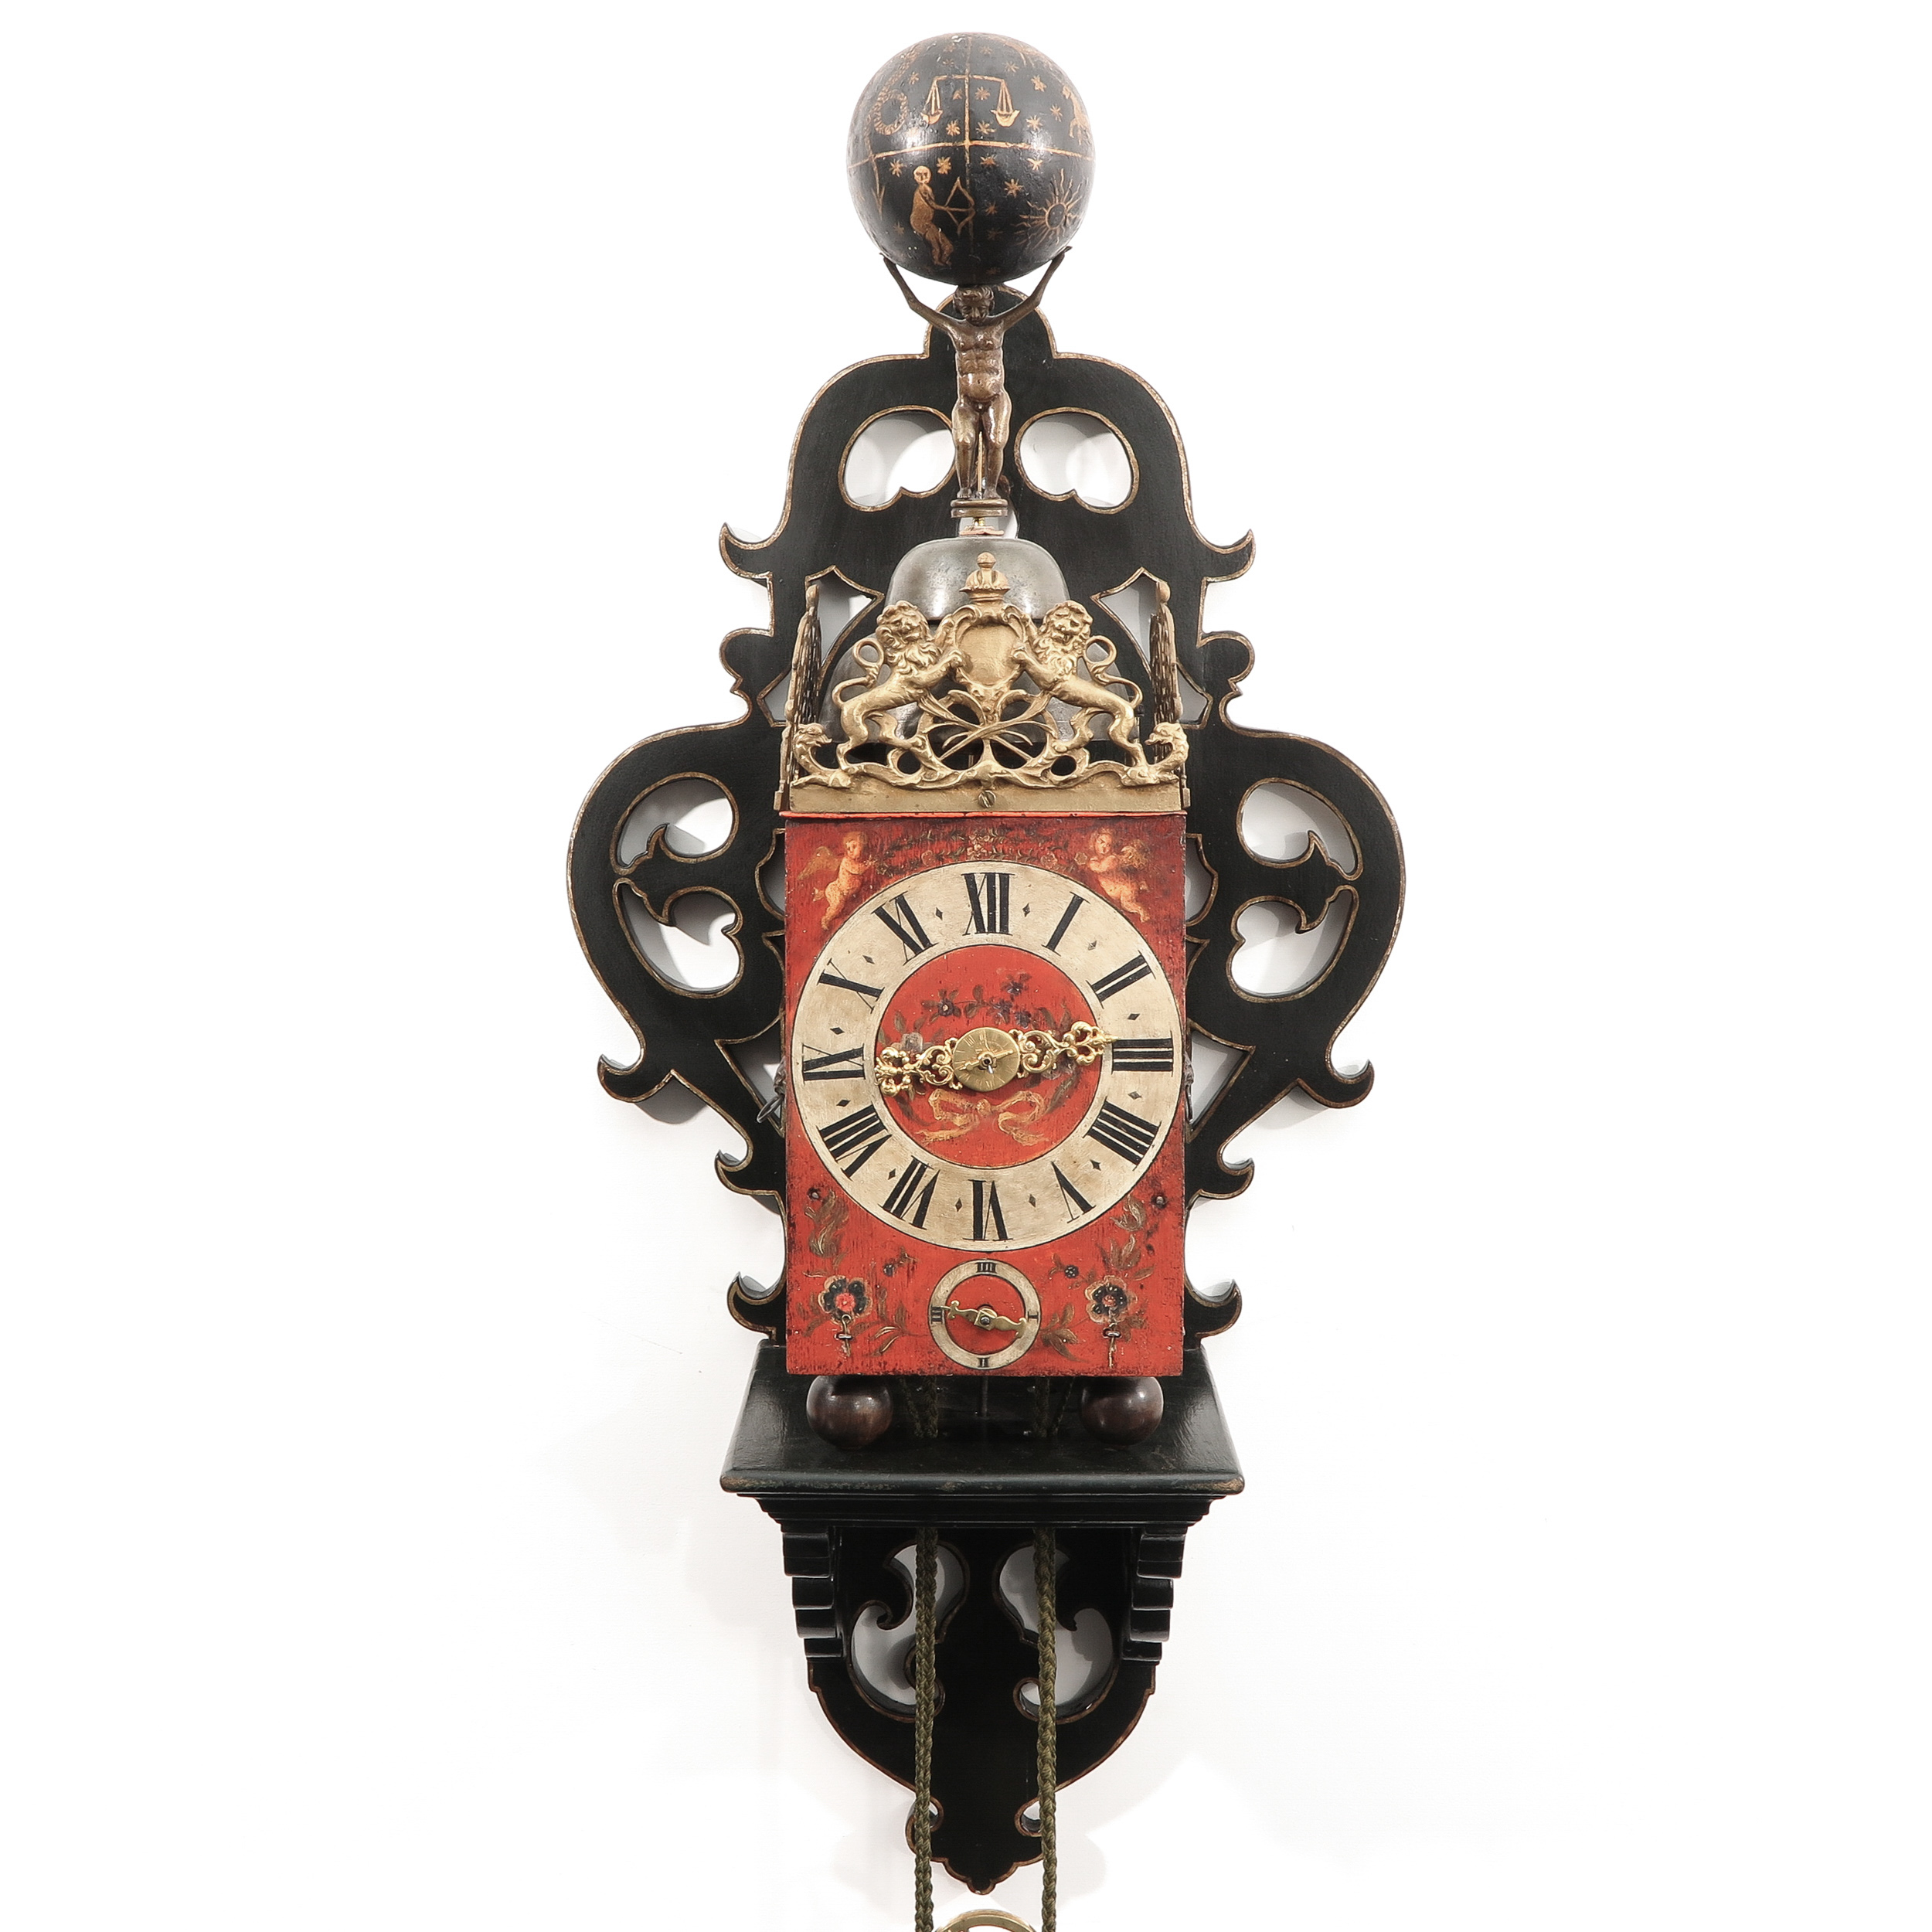 A 17th Century Stoelklok or Wall Clock